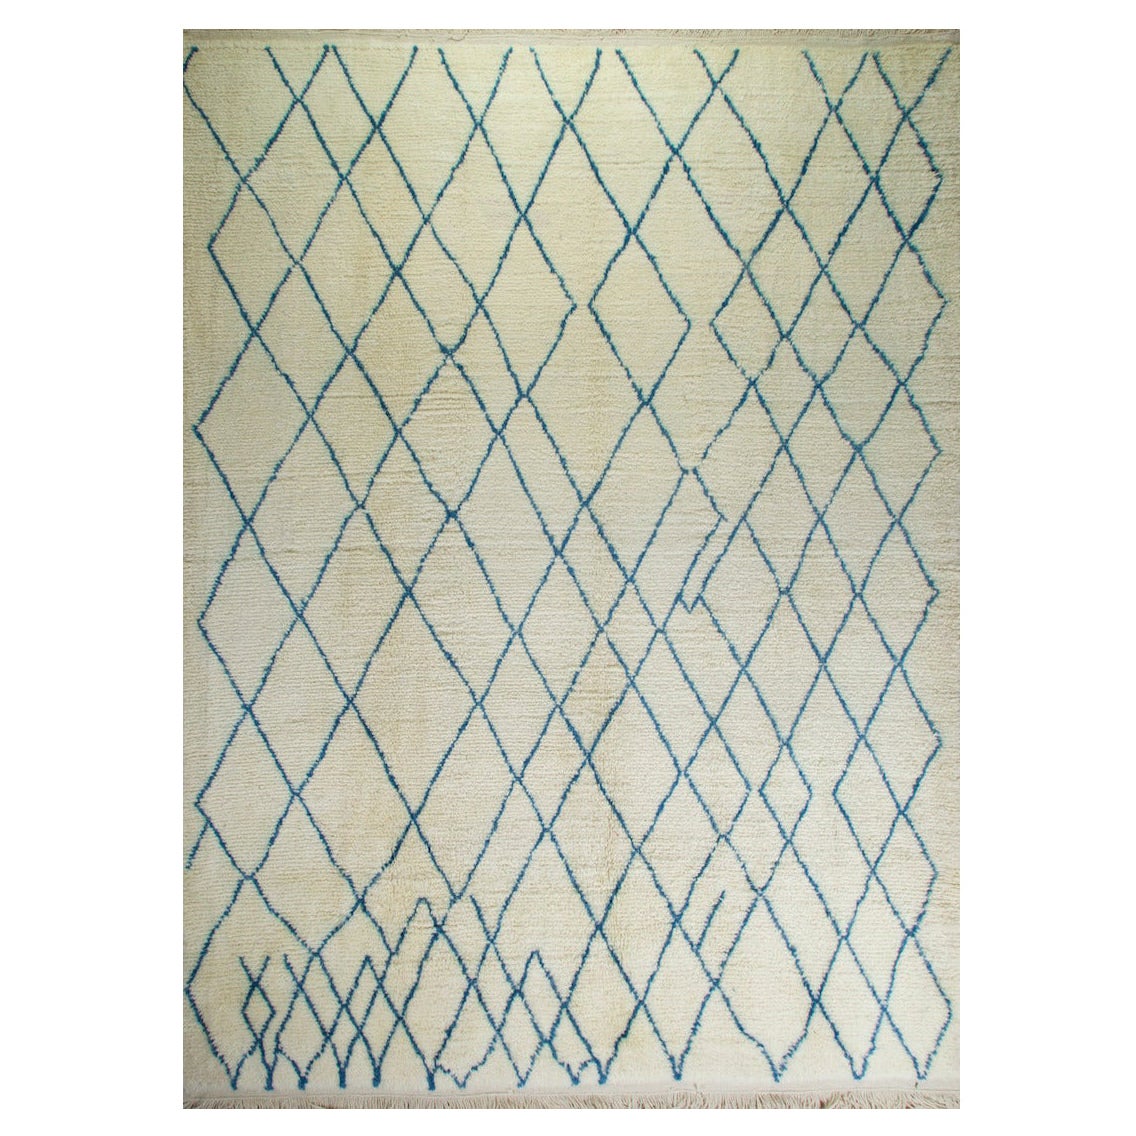 Tapis marocain 9x12 Ft. 100 % laine. Couleurs ivoire et bleues, options personnalisées disponibles